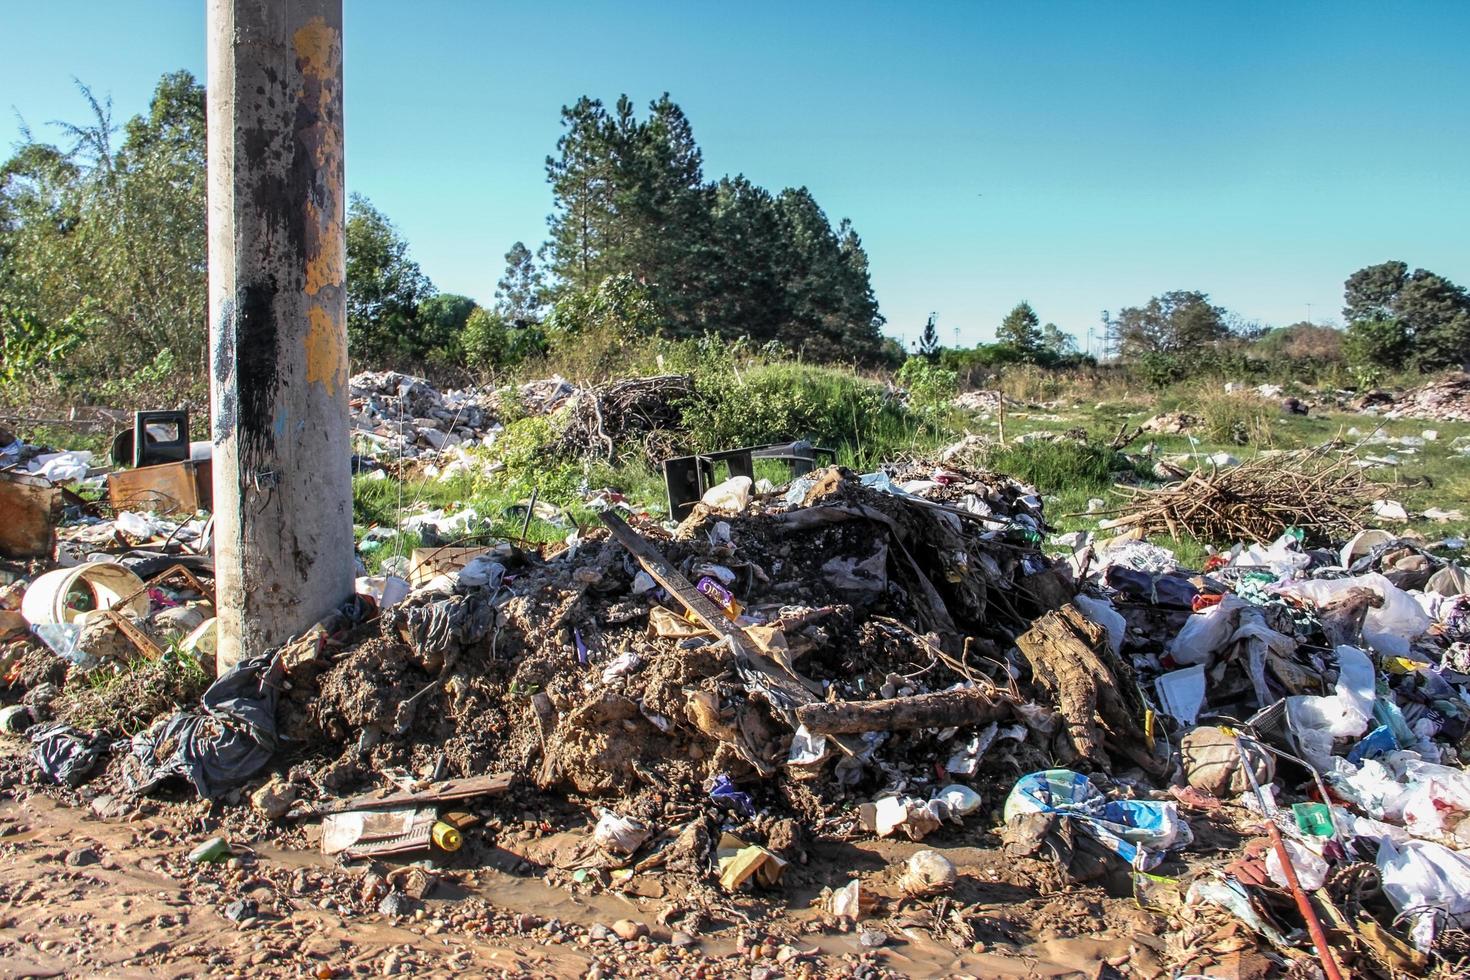 vertedero con desechos humanos que contaminan el medio ambiente foto